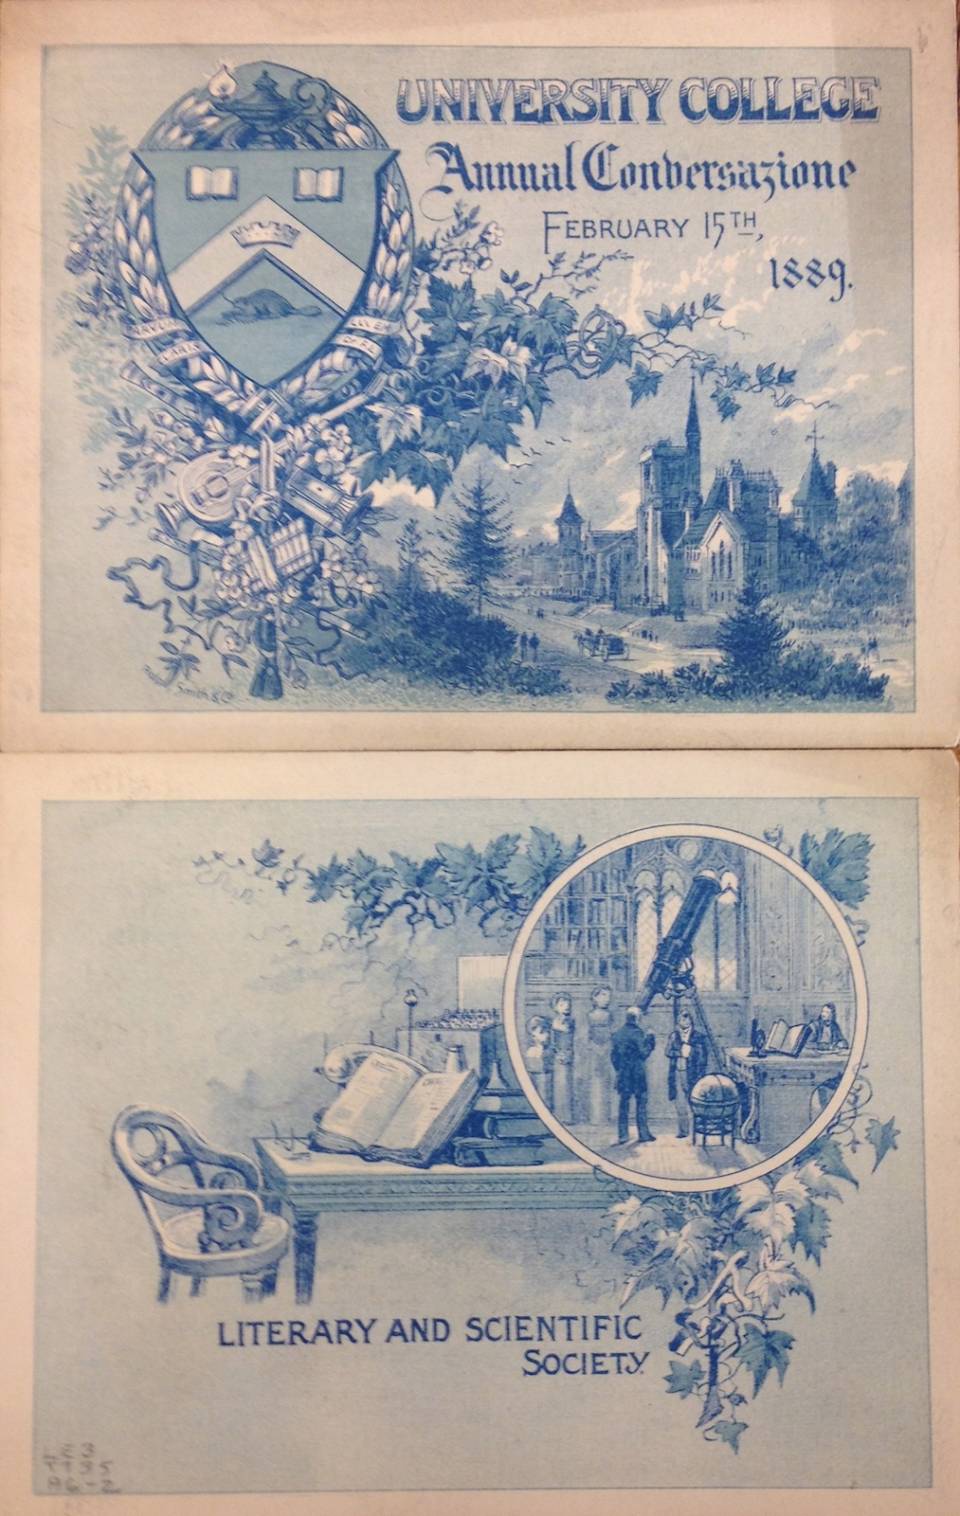 Printed invitation or program for the University College Annual Conversazione, February 15th, 1889